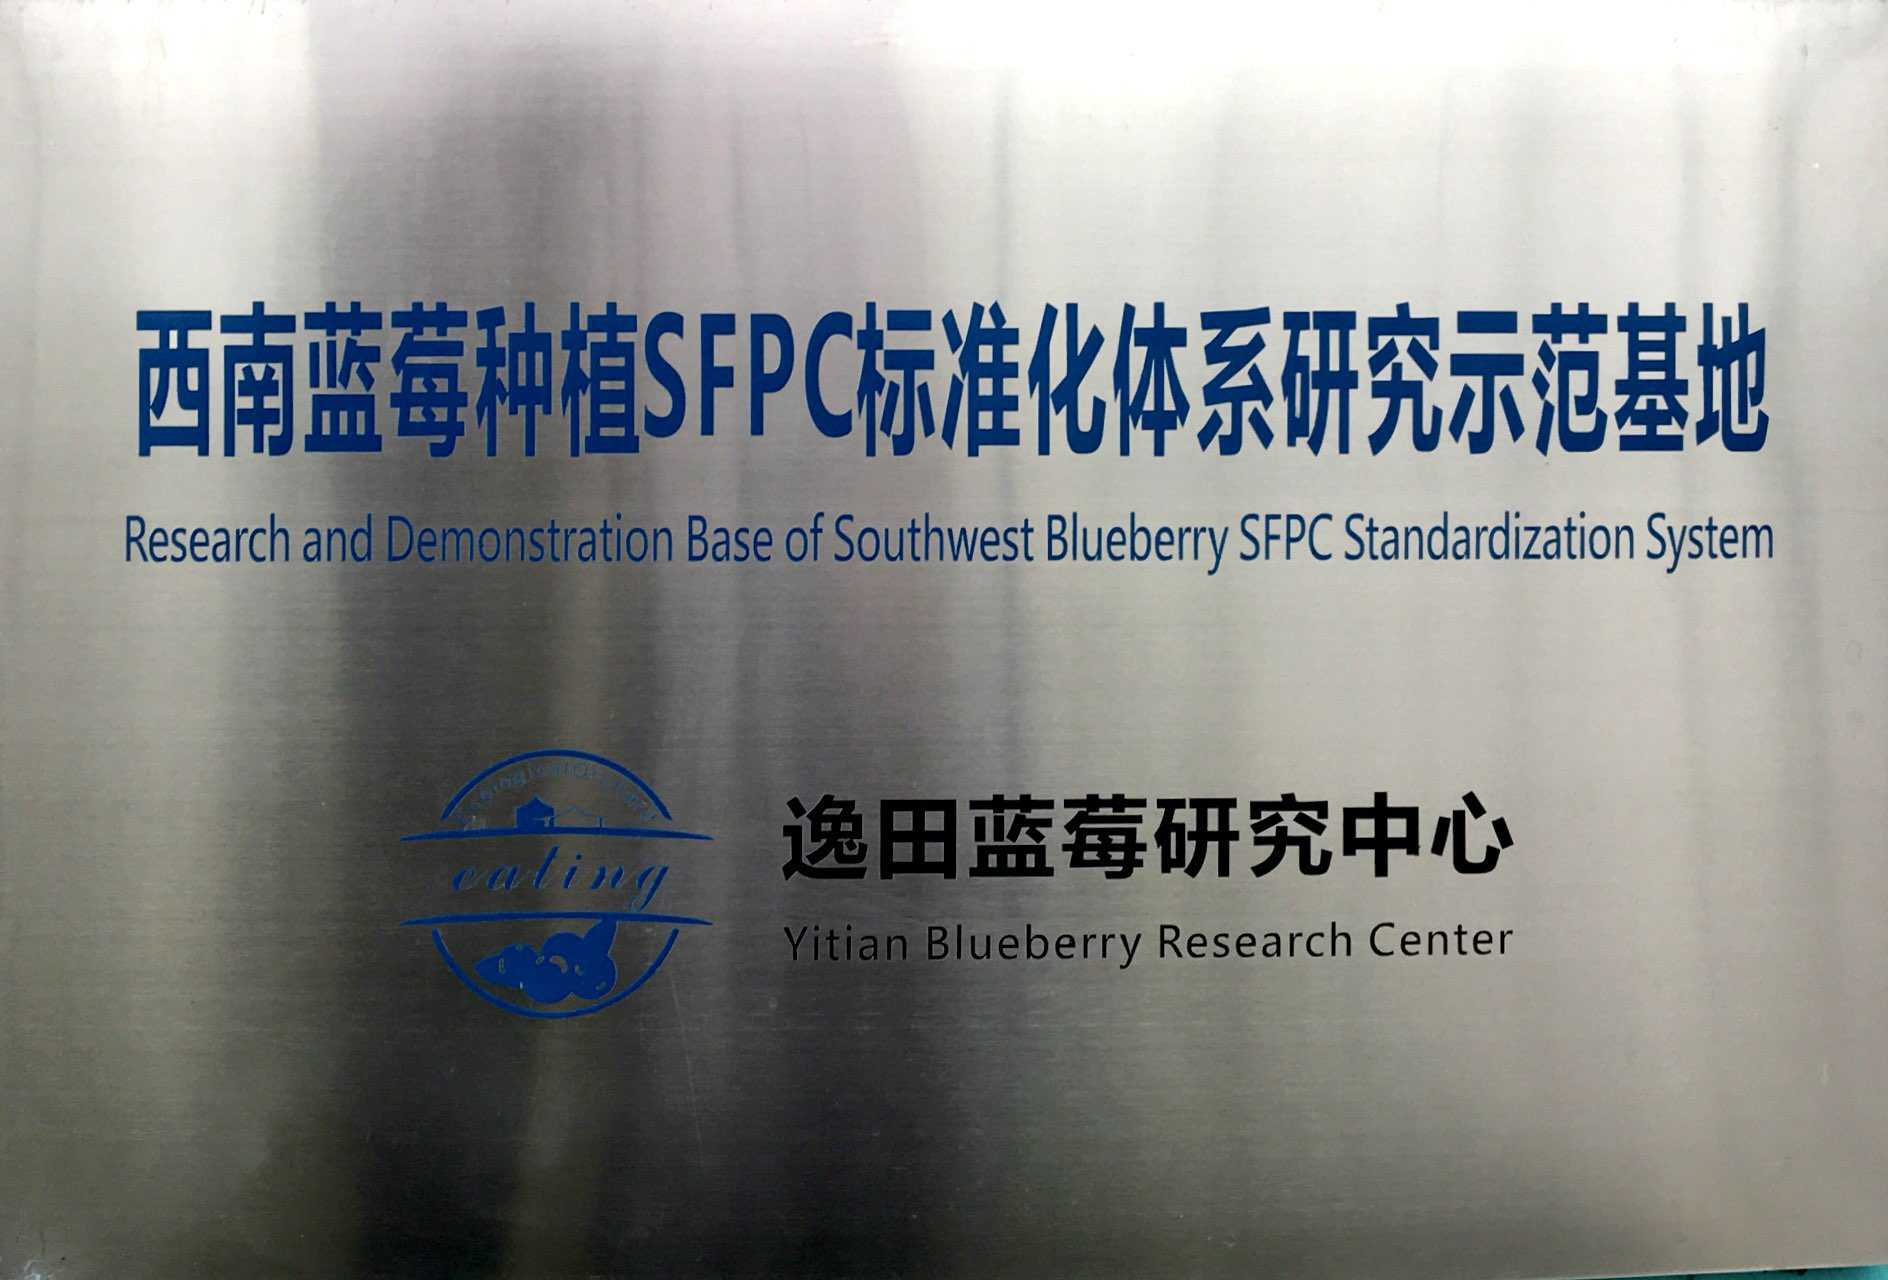 西南藍莓種植SFPC標準化體系研究示范基地—逸田藍莓研究中心